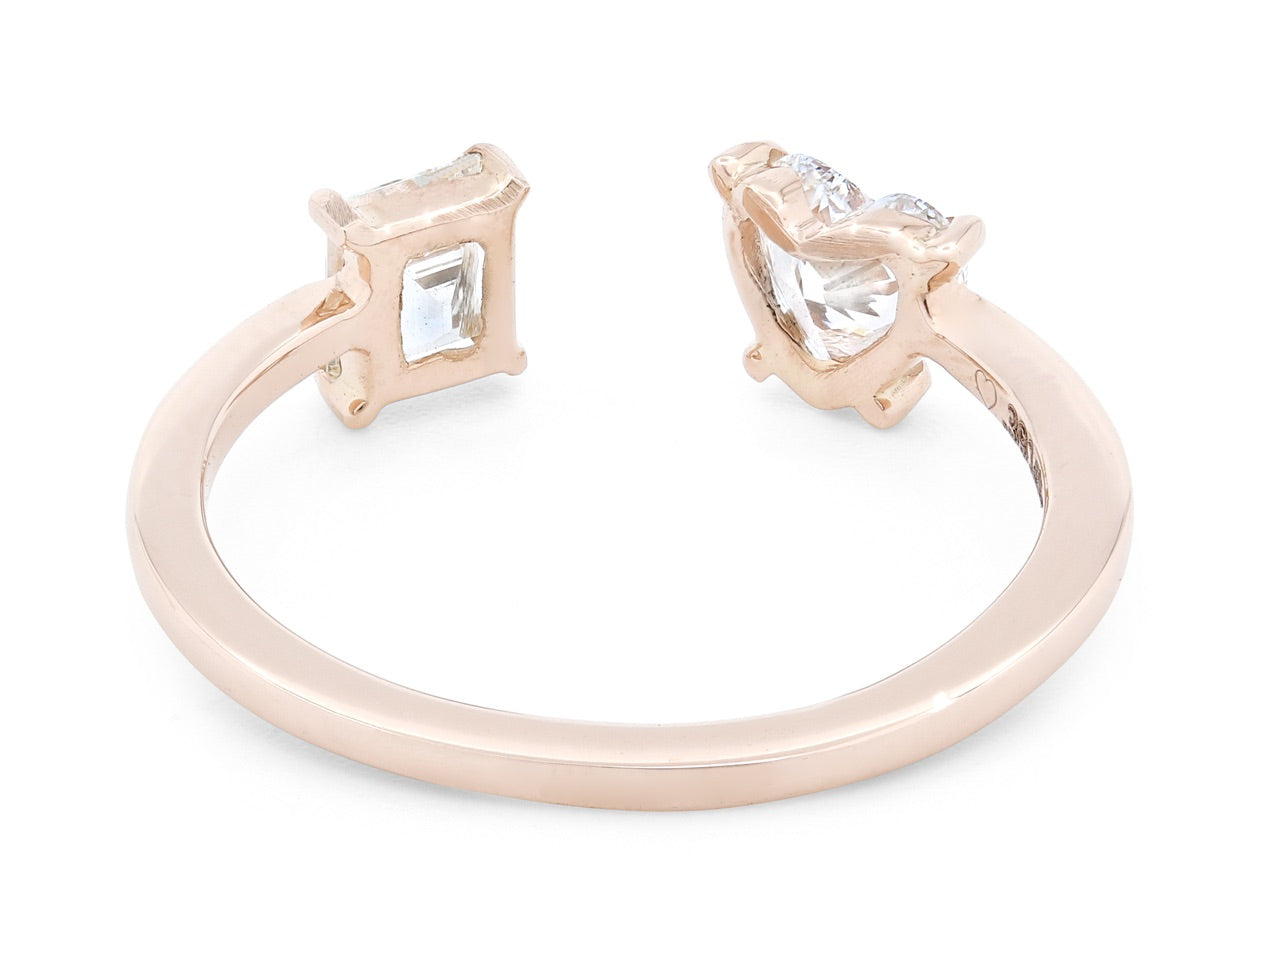 Beladora 'Bespoke' Open Band Diamond Ring, 0.73 total carats, in 18K Rose Gold